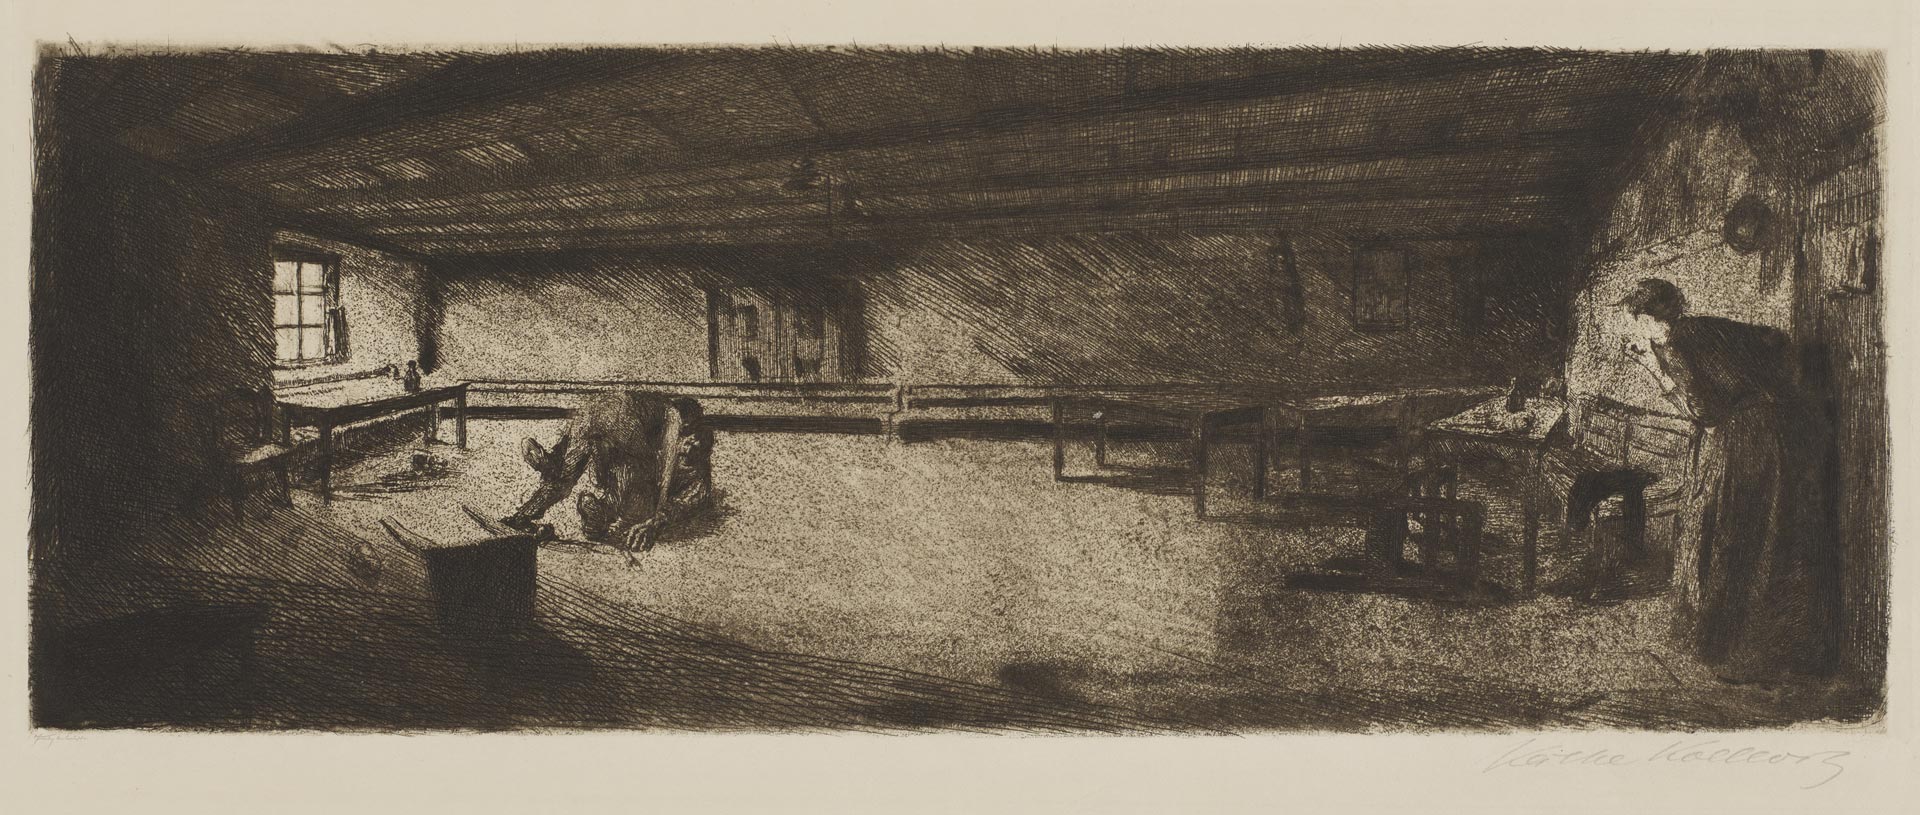 Szene aus Germinal, 1893, Strichätzung, Kaltnadel, Schmirgel, Kn 19 III b